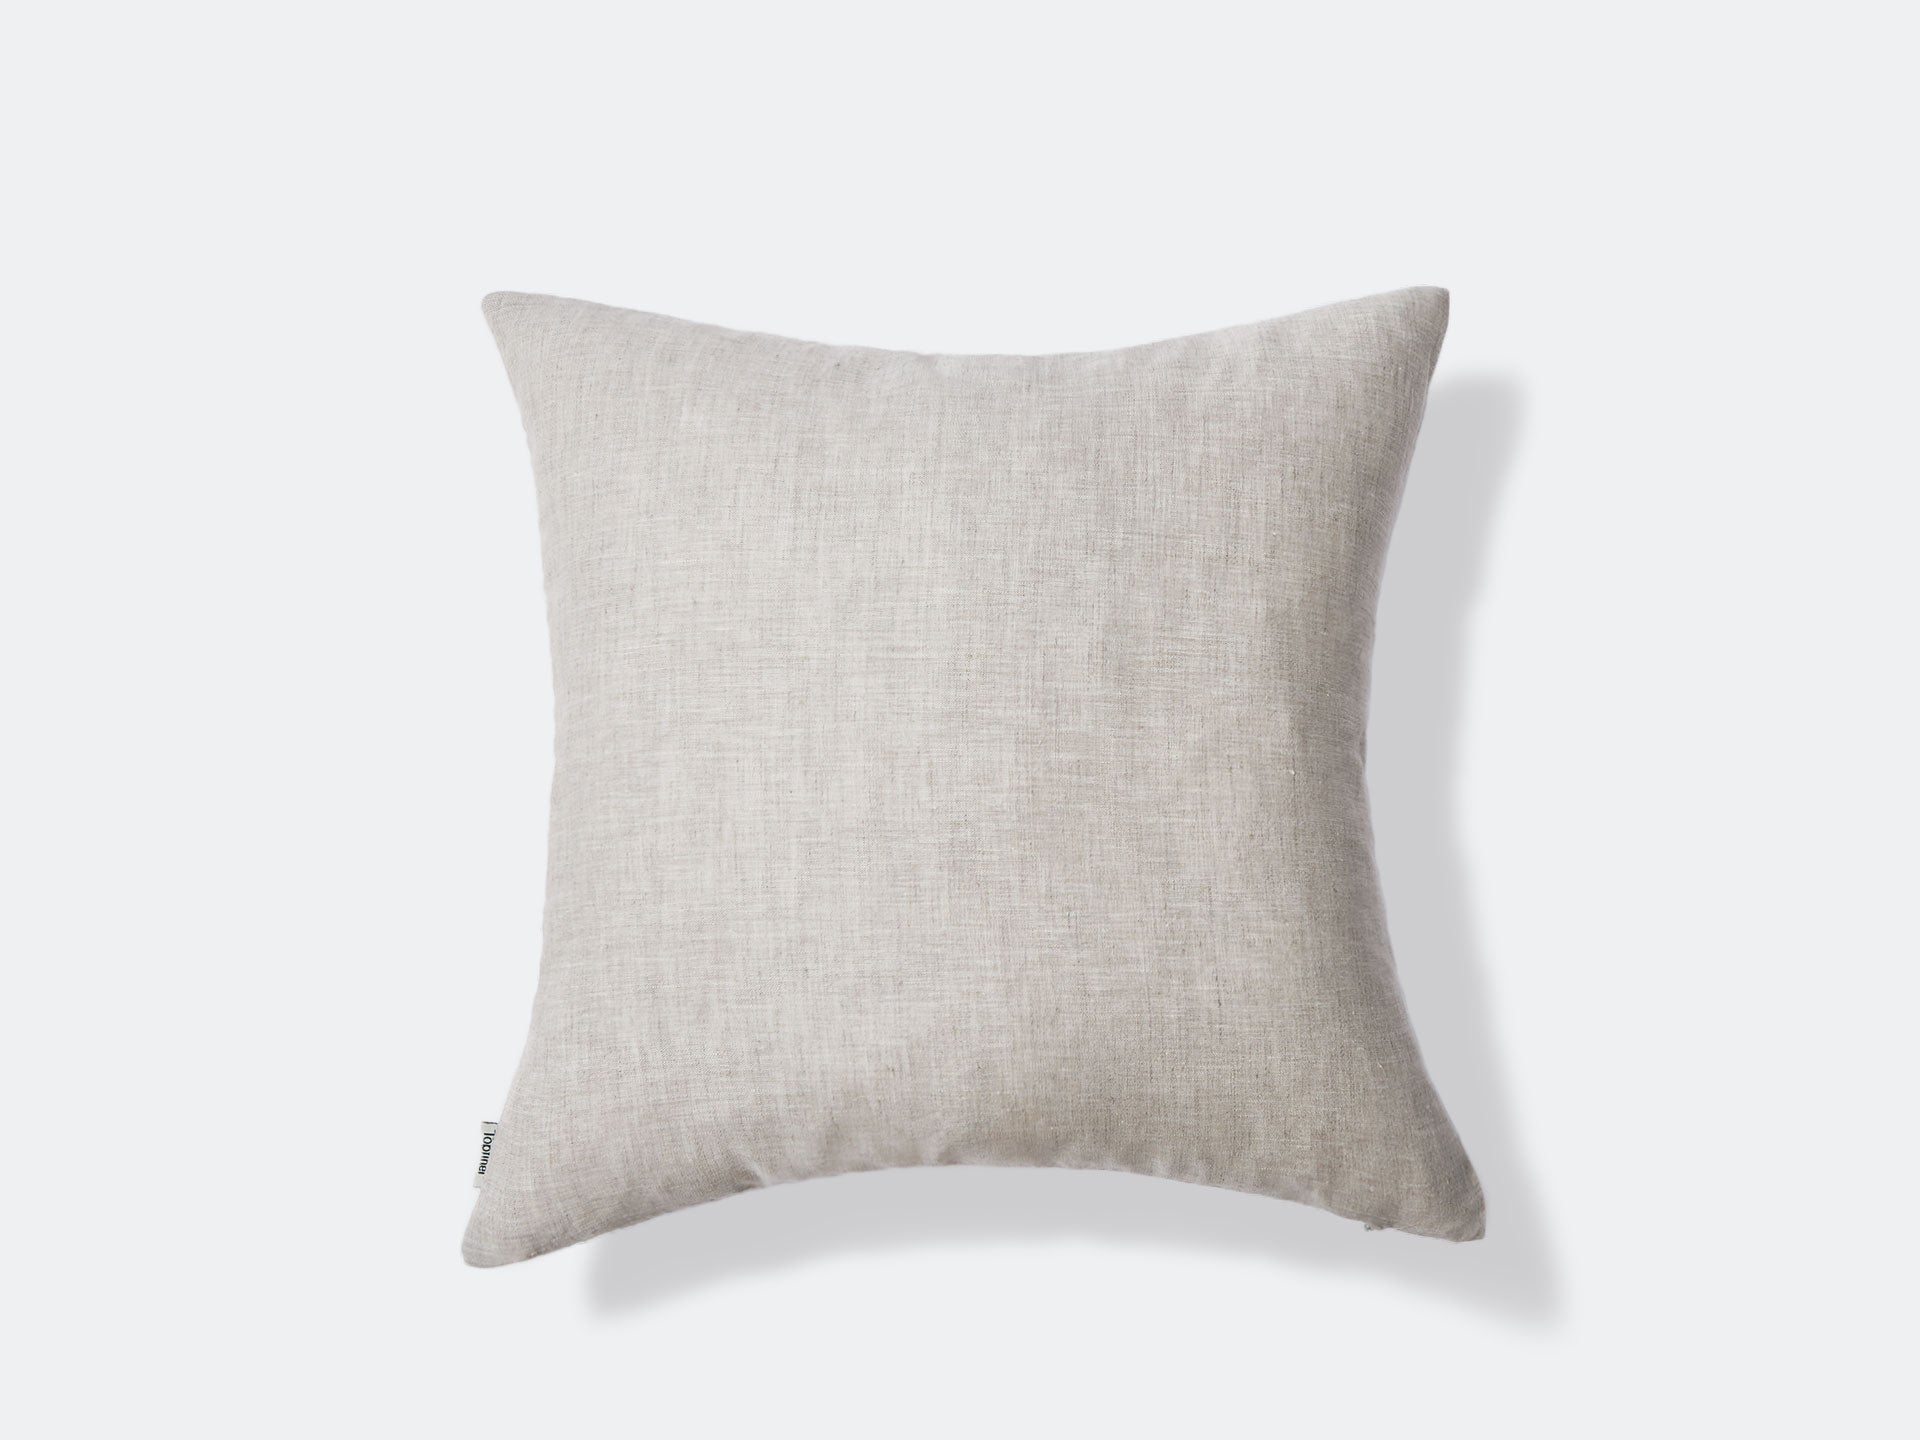 Antique Hand-Loomed Linen T Monogrammed Pillow Cover – Pandora de